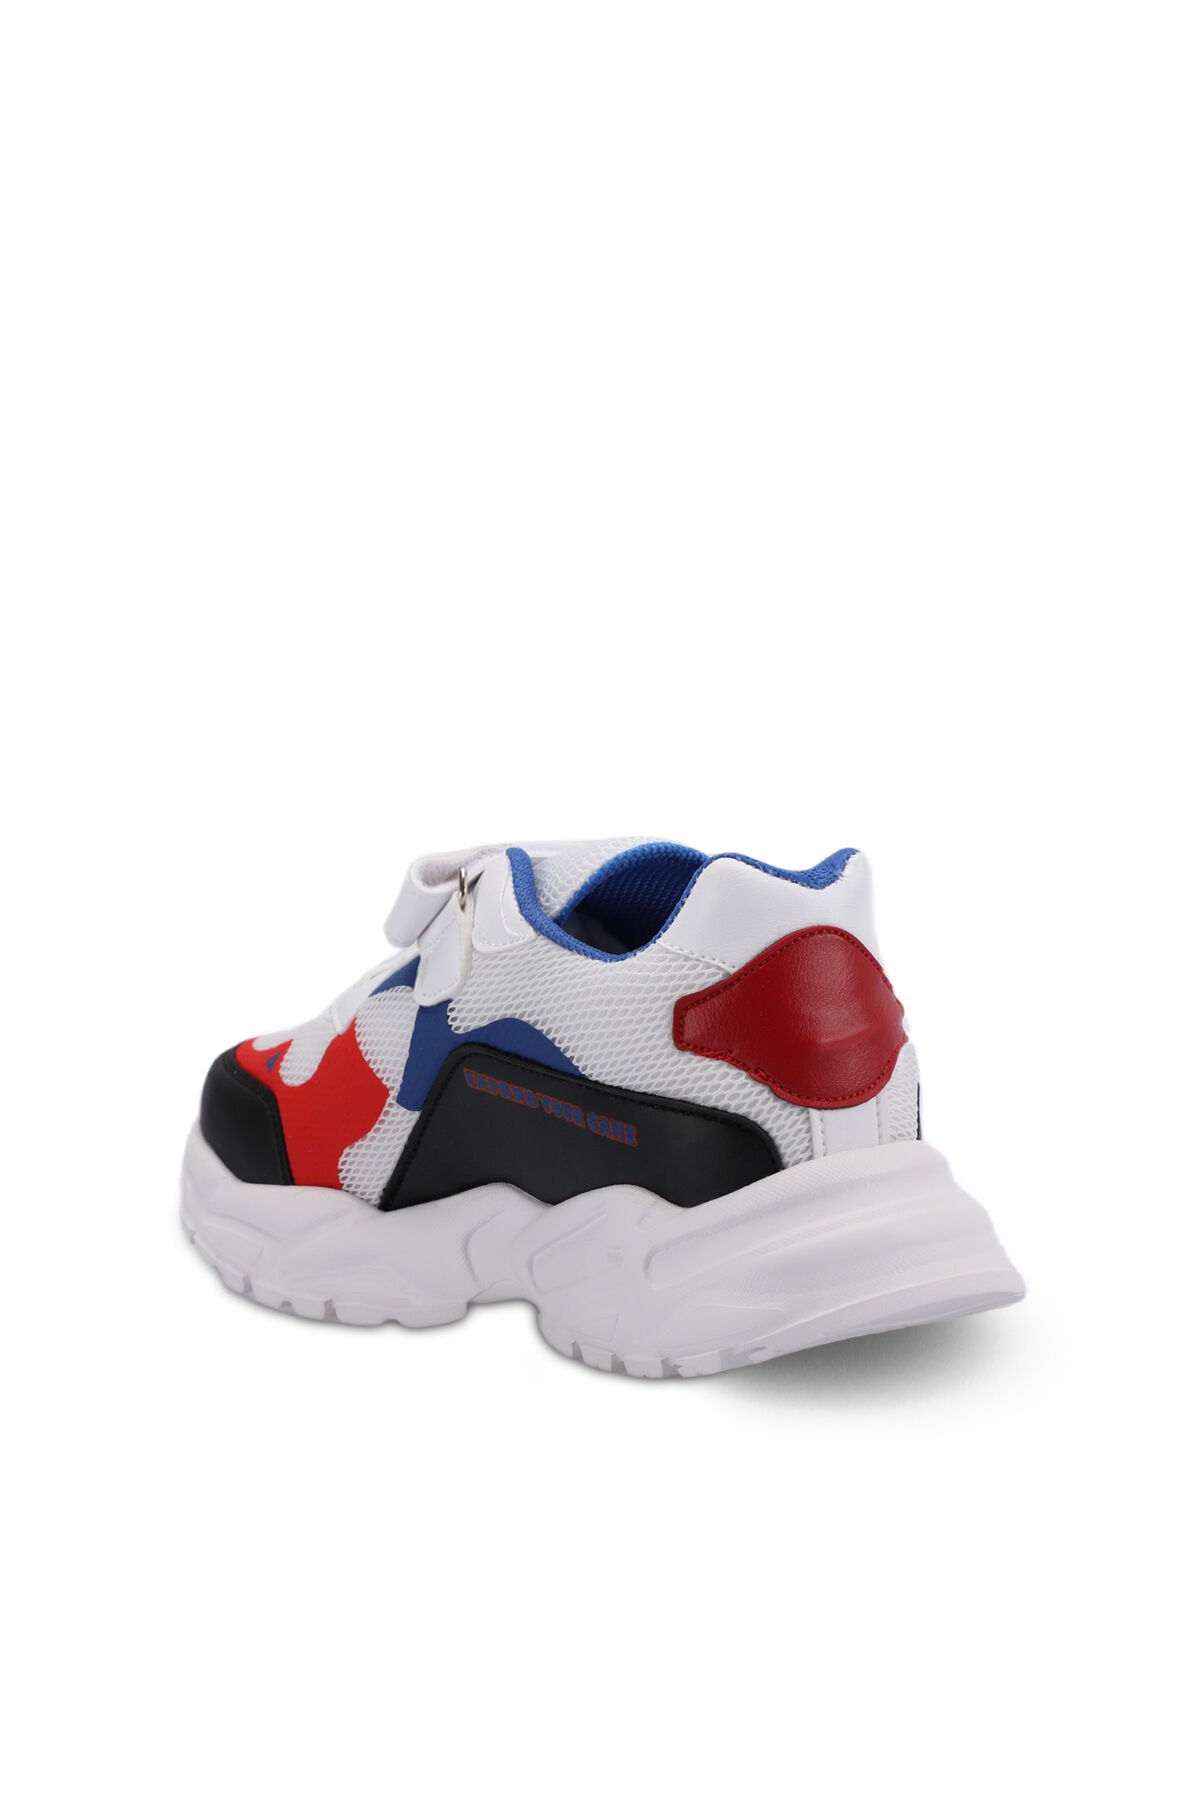 Slazenger KEKOA Sneaker Erkek Çocuk Ayakkabı Beyaz / Saks Mavi - Thumbnail